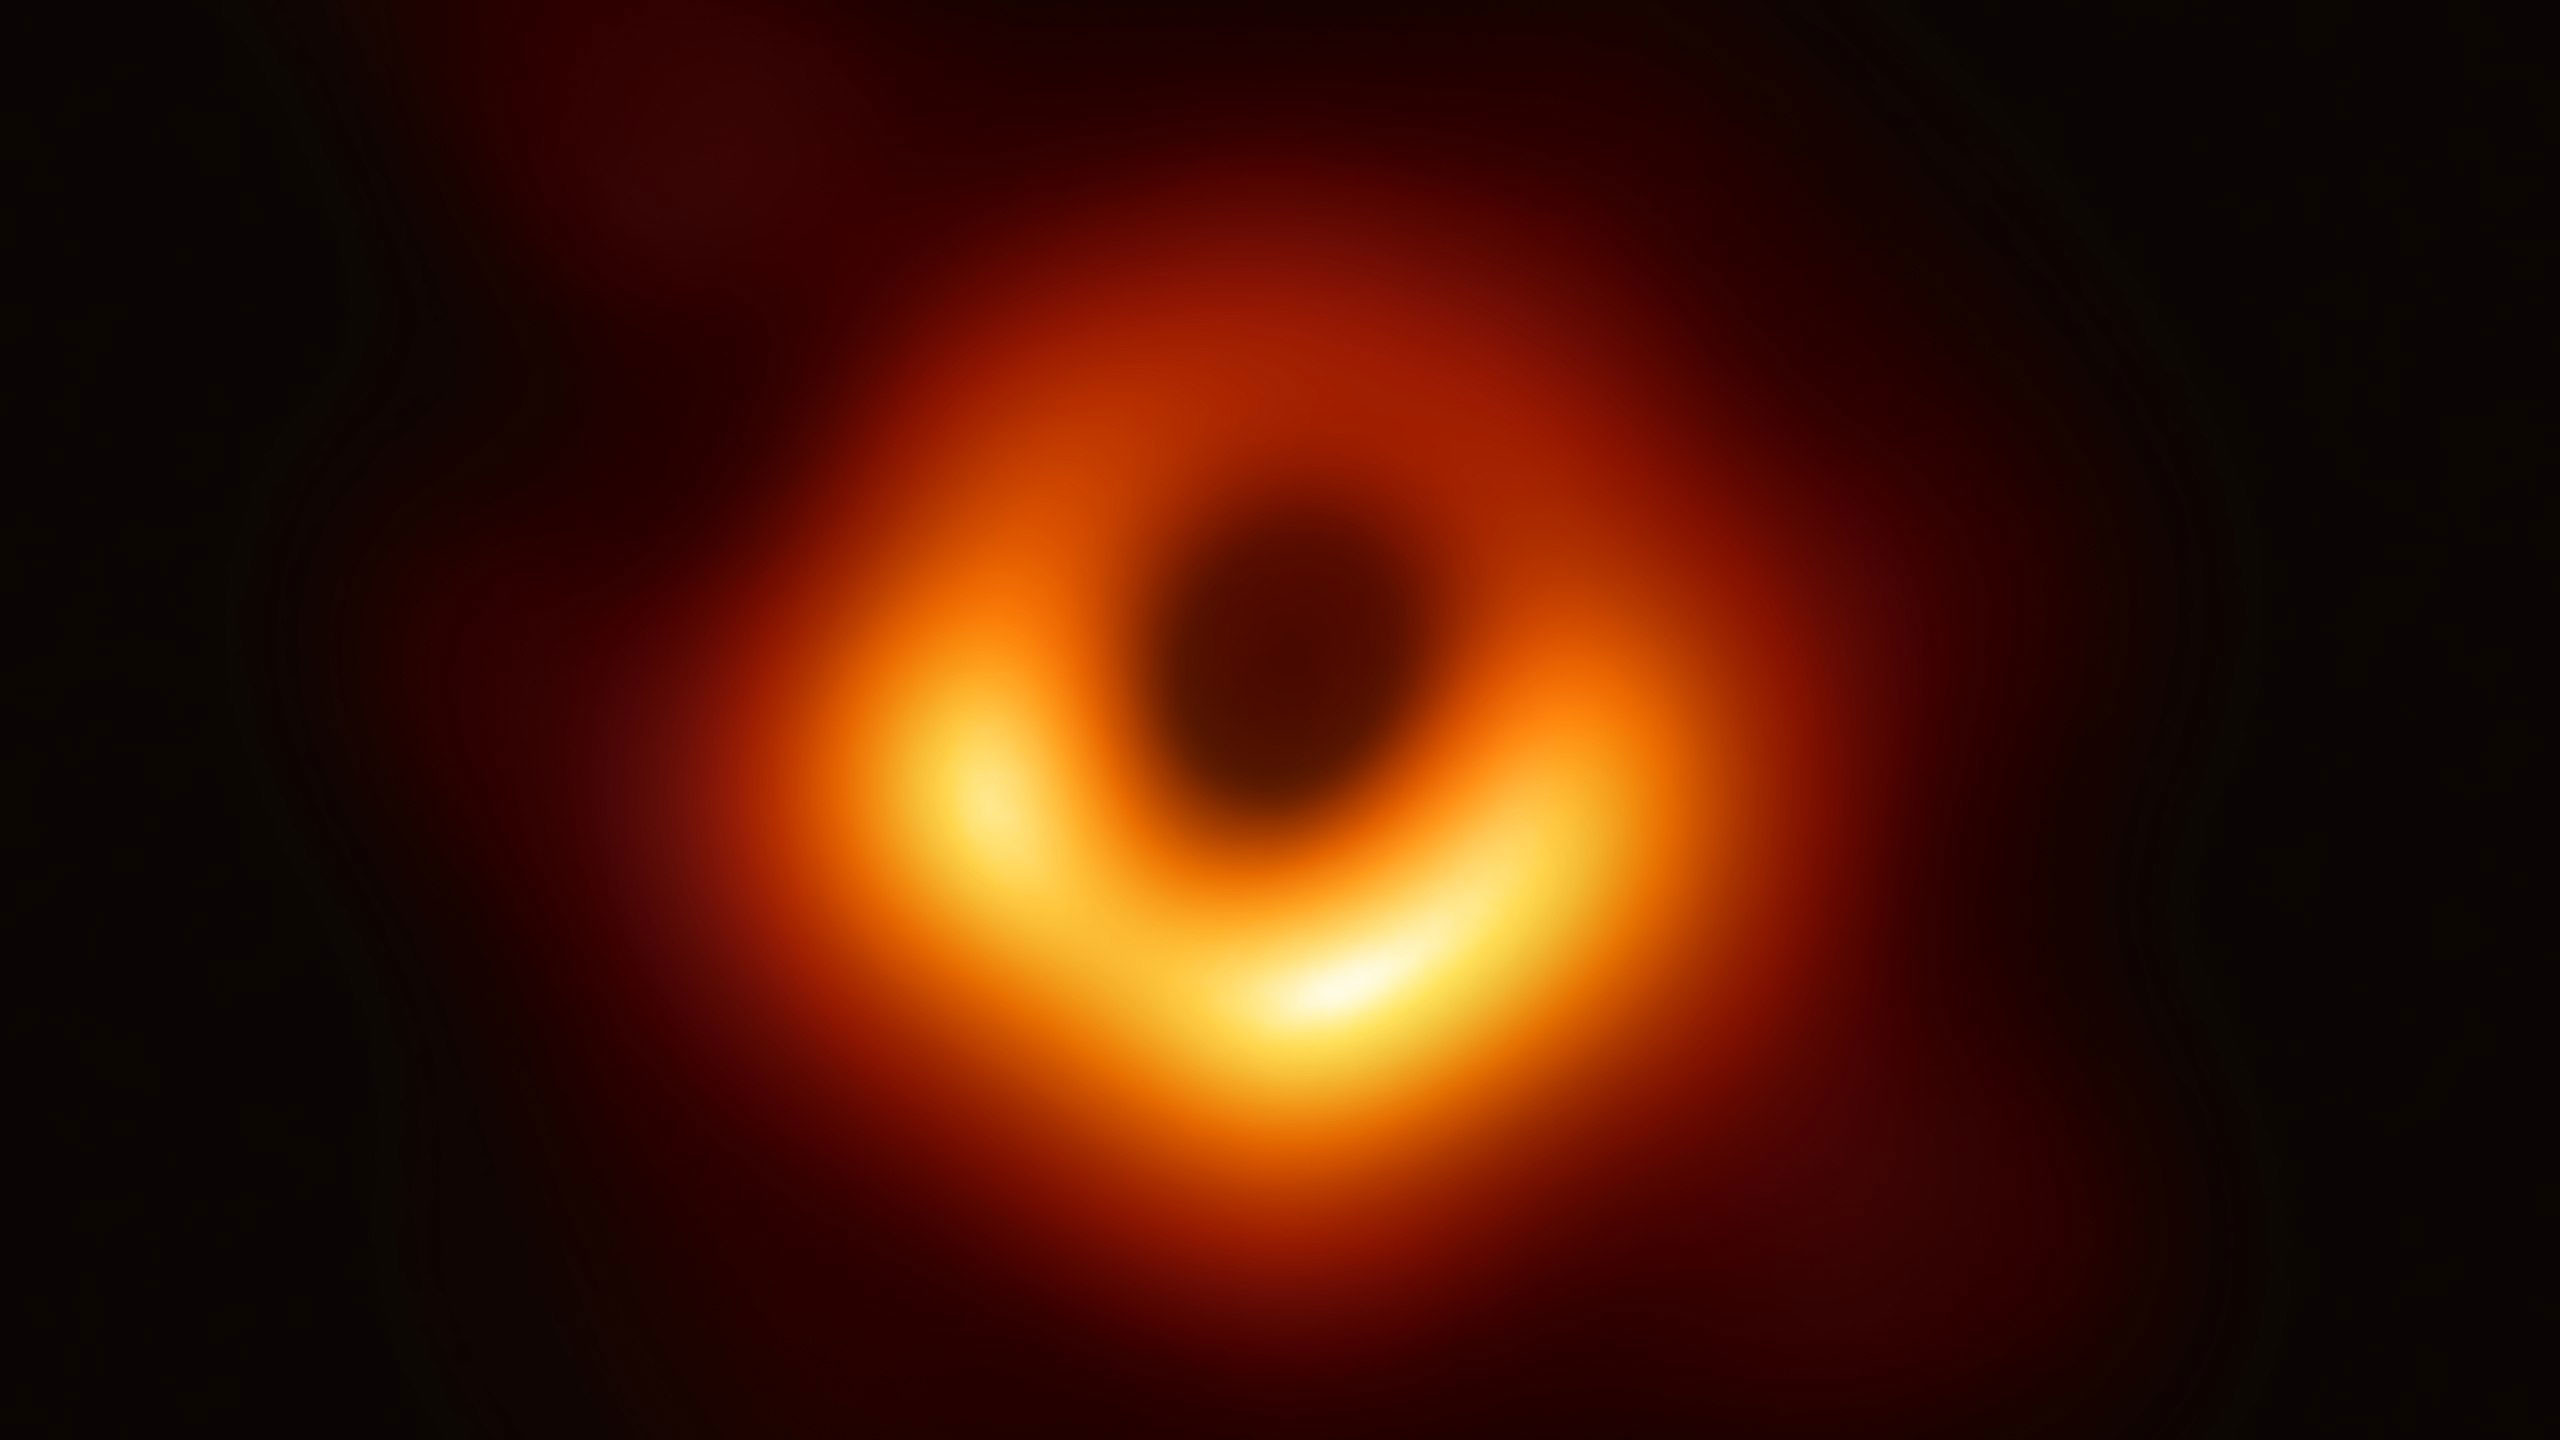 сделали фотографию черной дыры